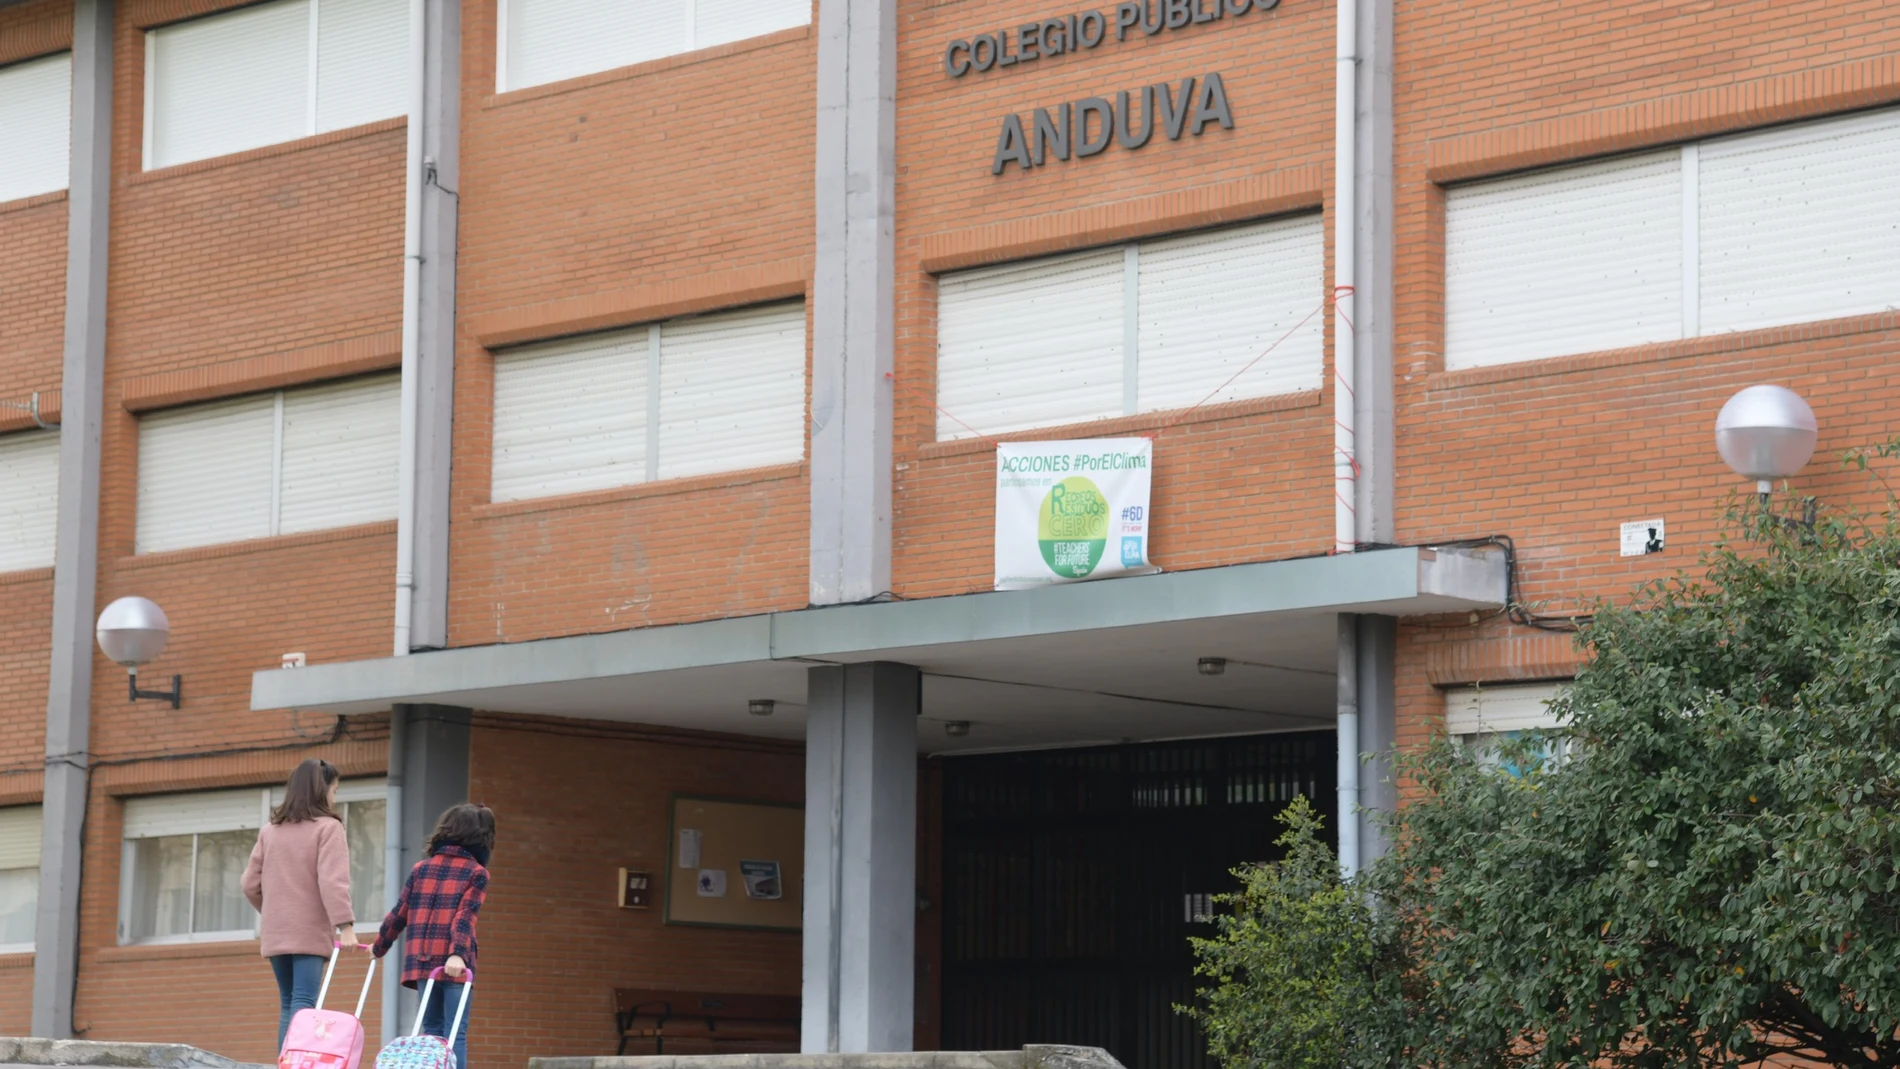 Colegio público Anduva, en Miranda de Ebro, que cerrará sus puertas en la jornada de hoy